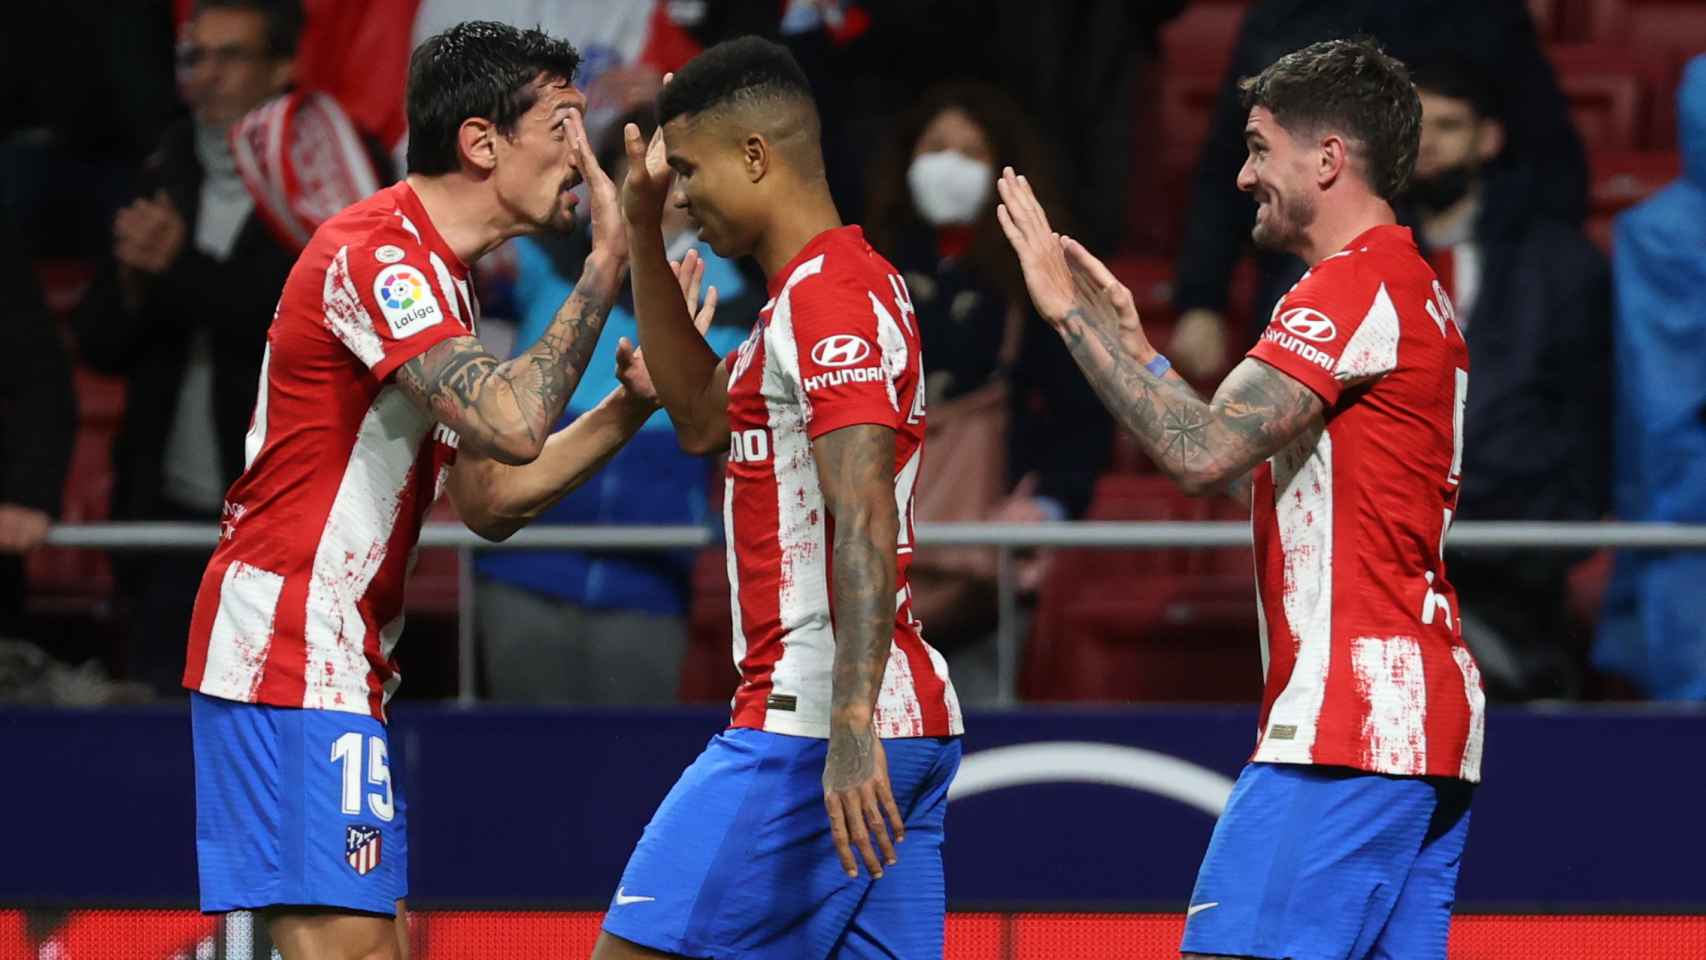 Stefan Savin, Reinildo y Rodrigo de Paul celebran un gol ante el Cádiz